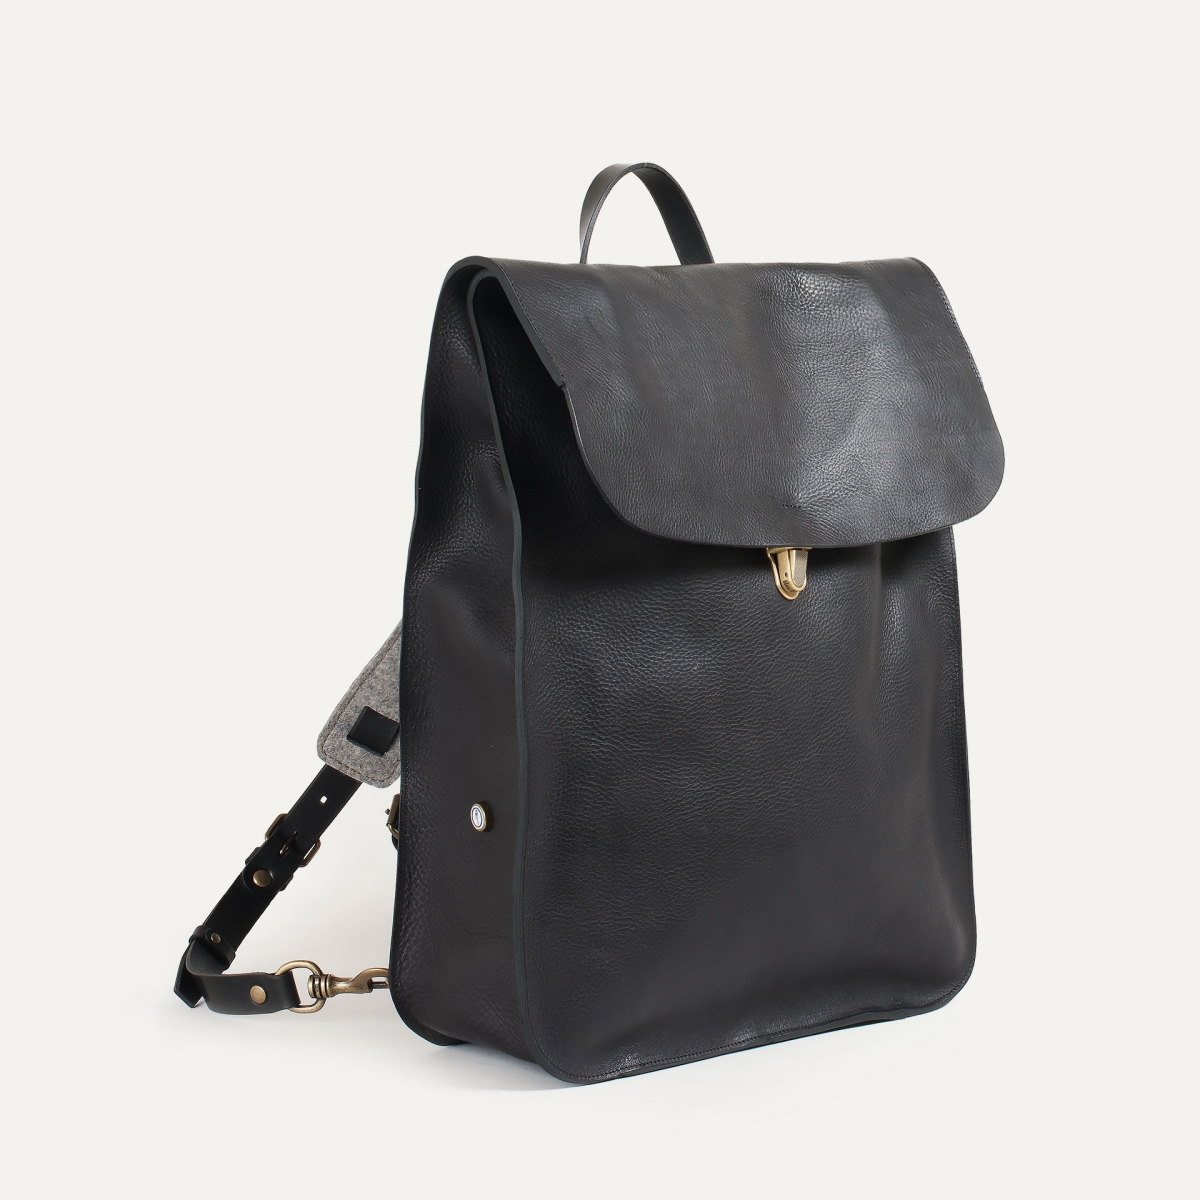 Arlo leather backpack - Black - Vintage Rucksack, laptop backpack ...